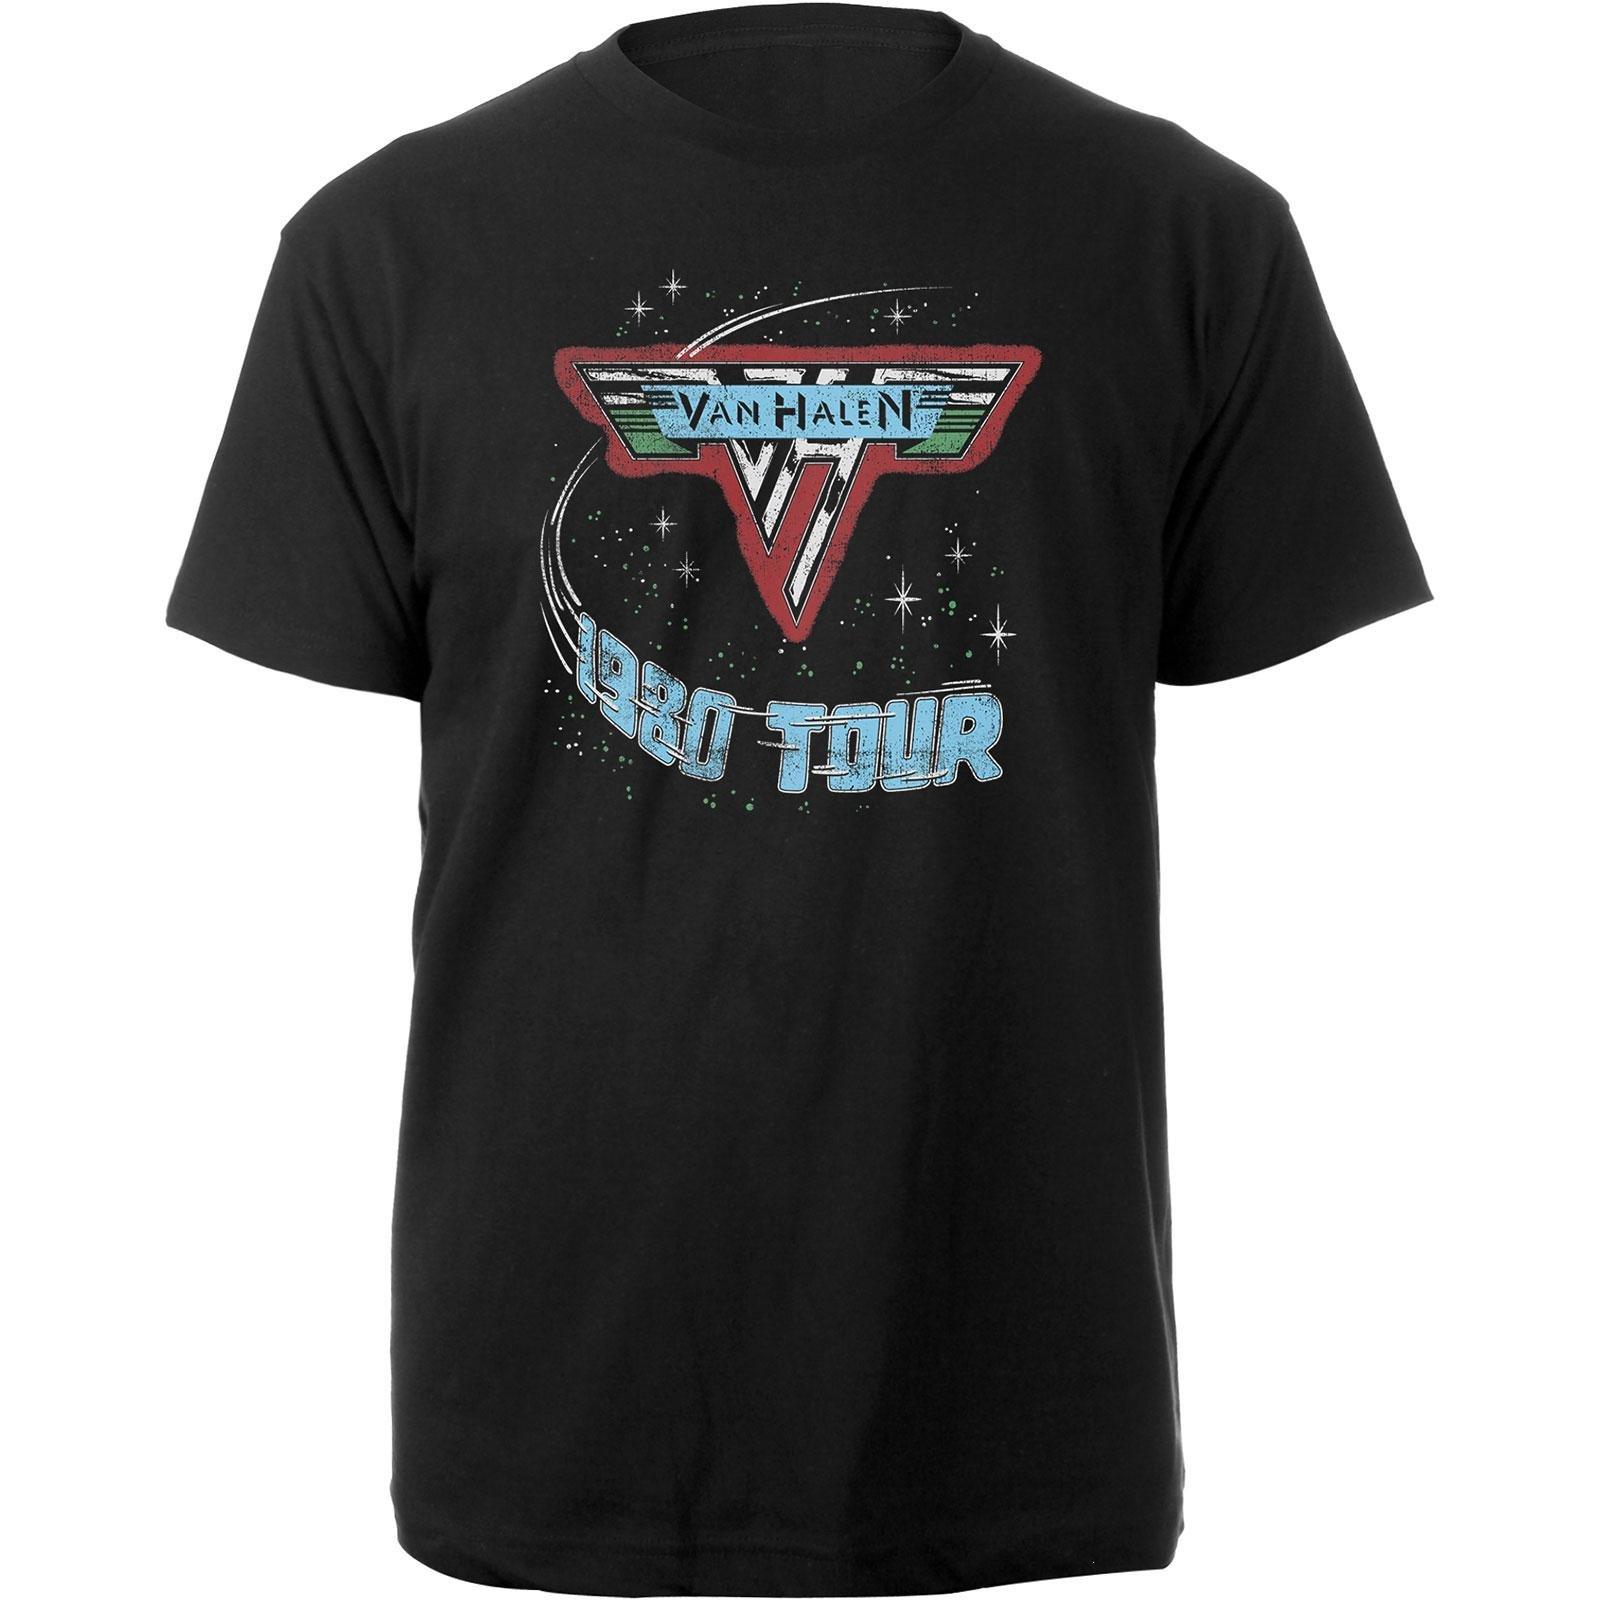 Van Halen  1980 Tour TShirt 